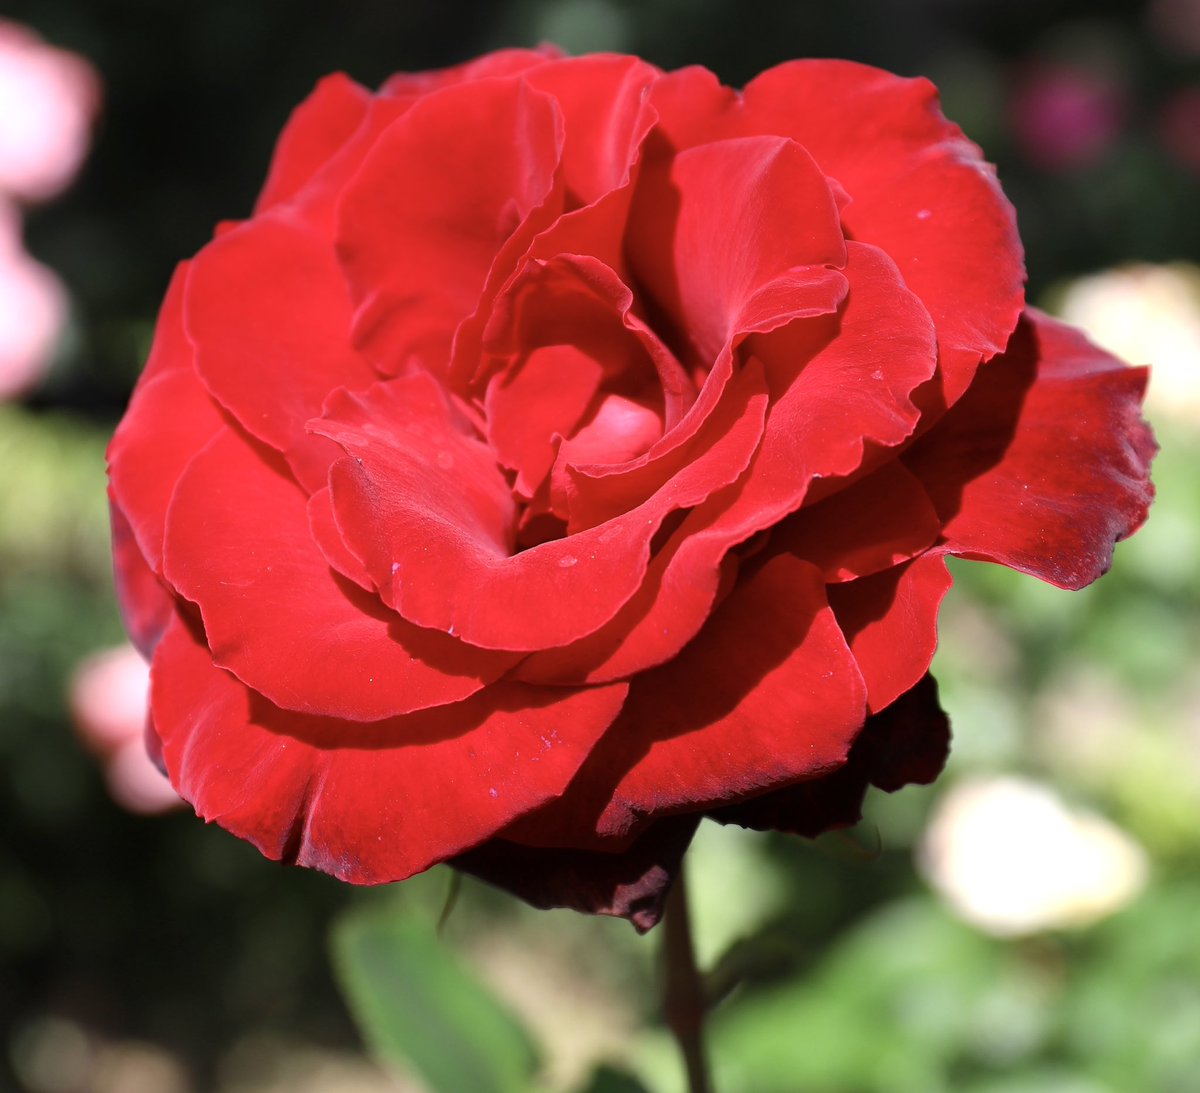 バラ🌹ベルサイユのばら🌹仏 大輪の真紅の花色が美しい！ 宝塚ファンでなくても、このバラの名前には惹かれる。弁質はビロードのようで気品があり堂々とした花姿、まさにベルばらの世界 #バラ #島和太郎 #オフィスアーツ #花 #flowers #庭園 #スイーツ #CM #タレント #モデル #朝 #空